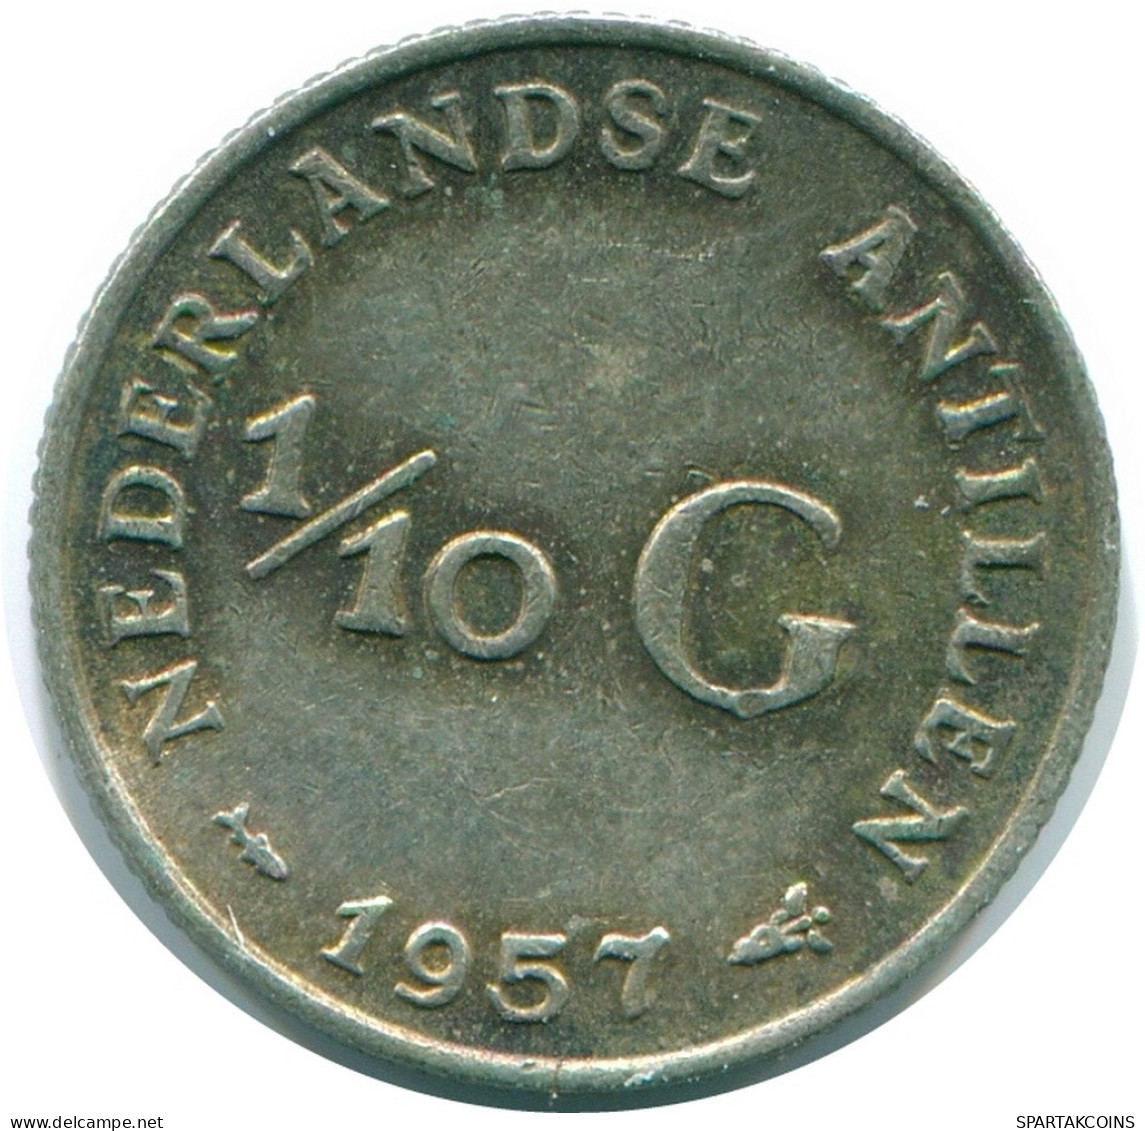 1/10 GULDEN 1957 NIEDERLÄNDISCHE ANTILLEN SILBER Koloniale Münze #NL12176.3.D.A - Antille Olandesi